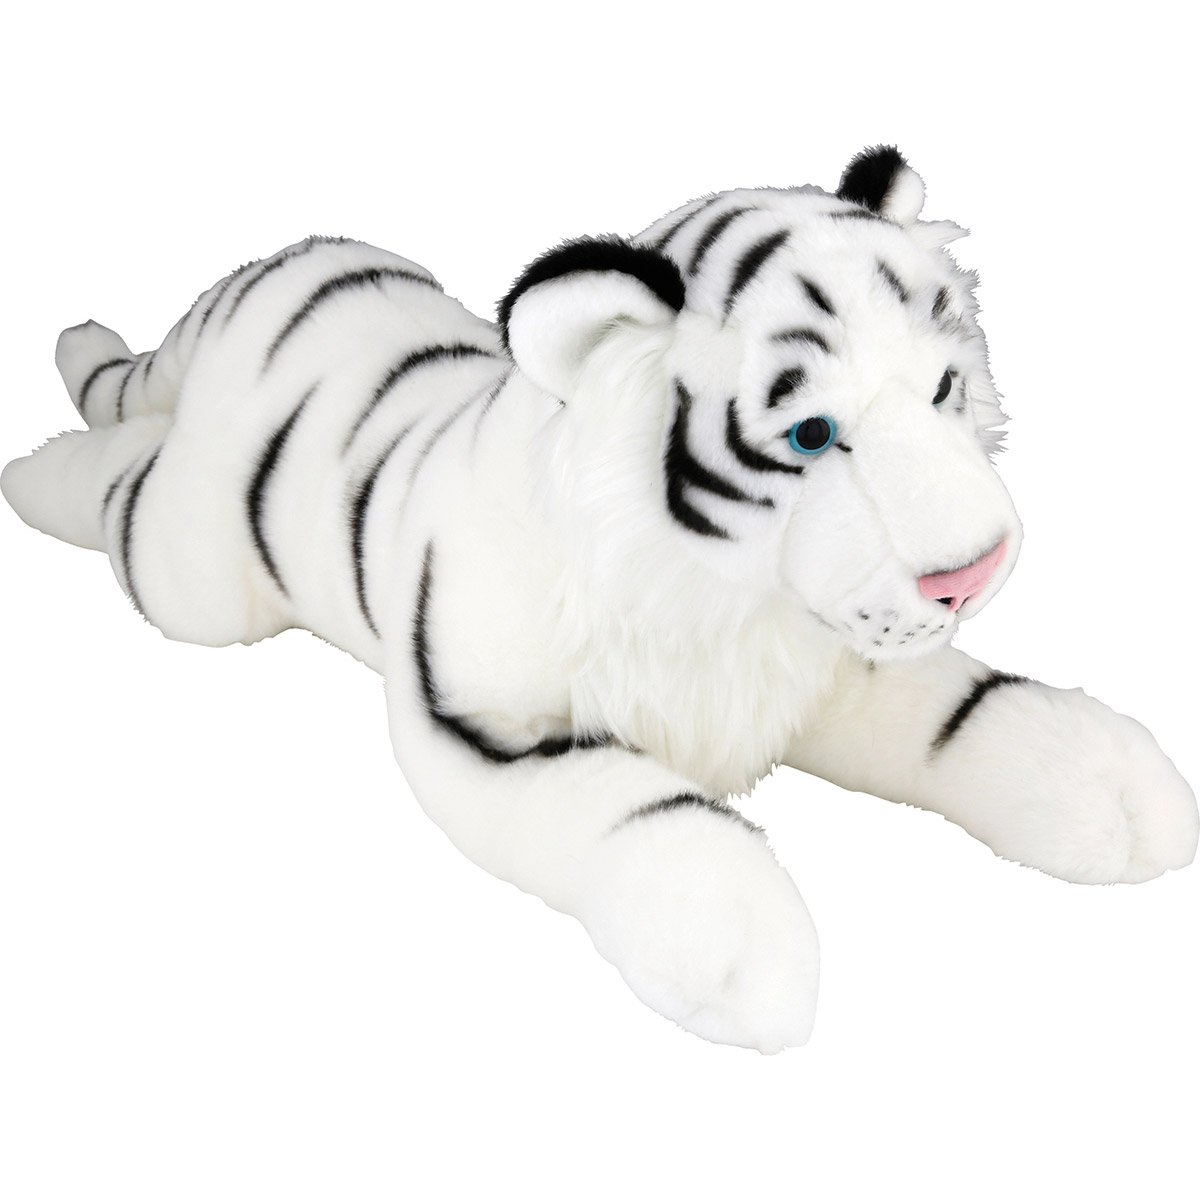 BRUBAKER Tigre 75 cm allongé animal en peluche très réaliste jouet doux 